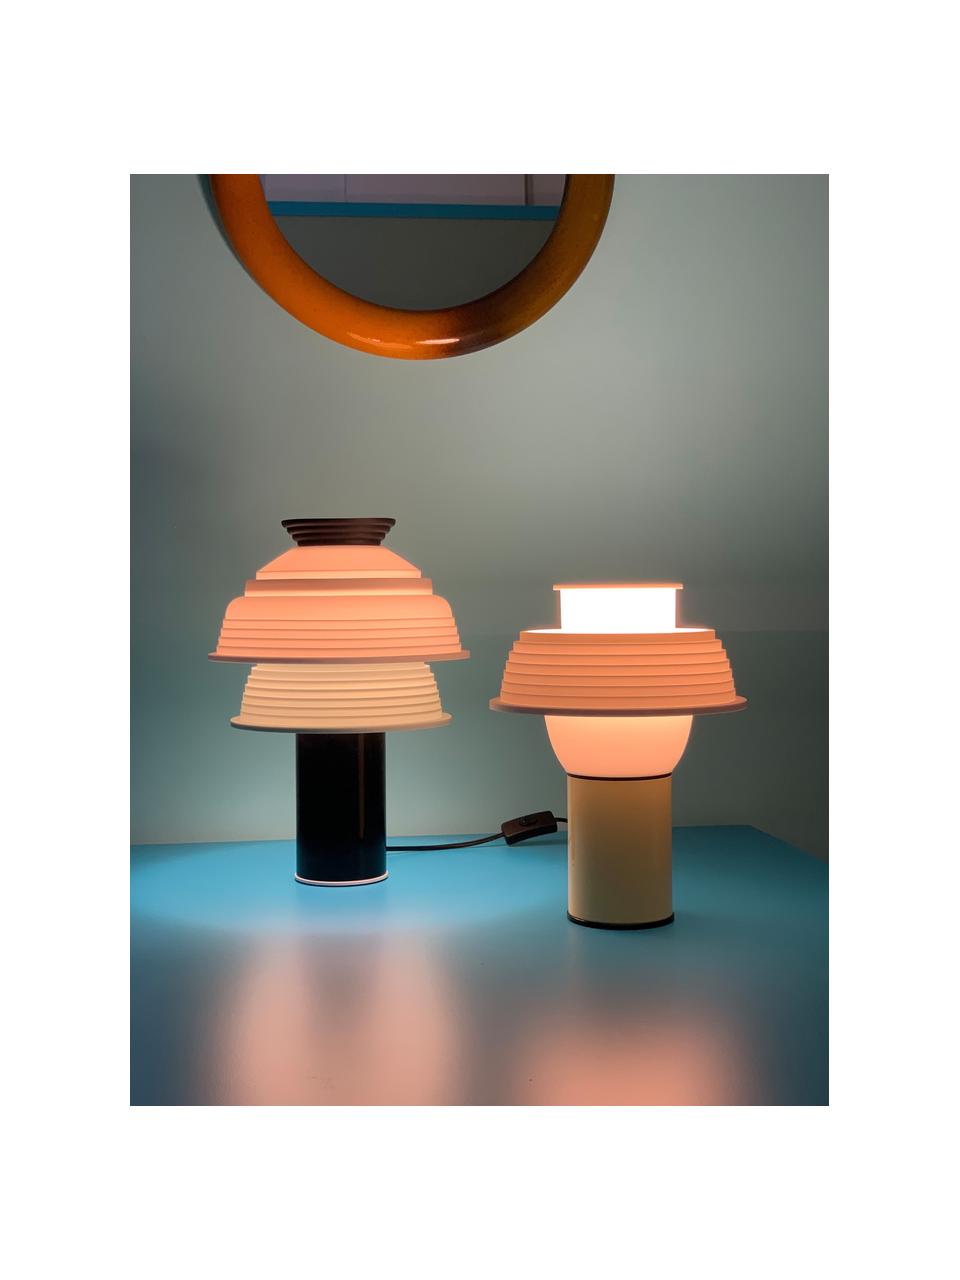 Malá stolová lampa TL4, Čierna, biela, svetlozelená, Ø 26 x V 25 cm